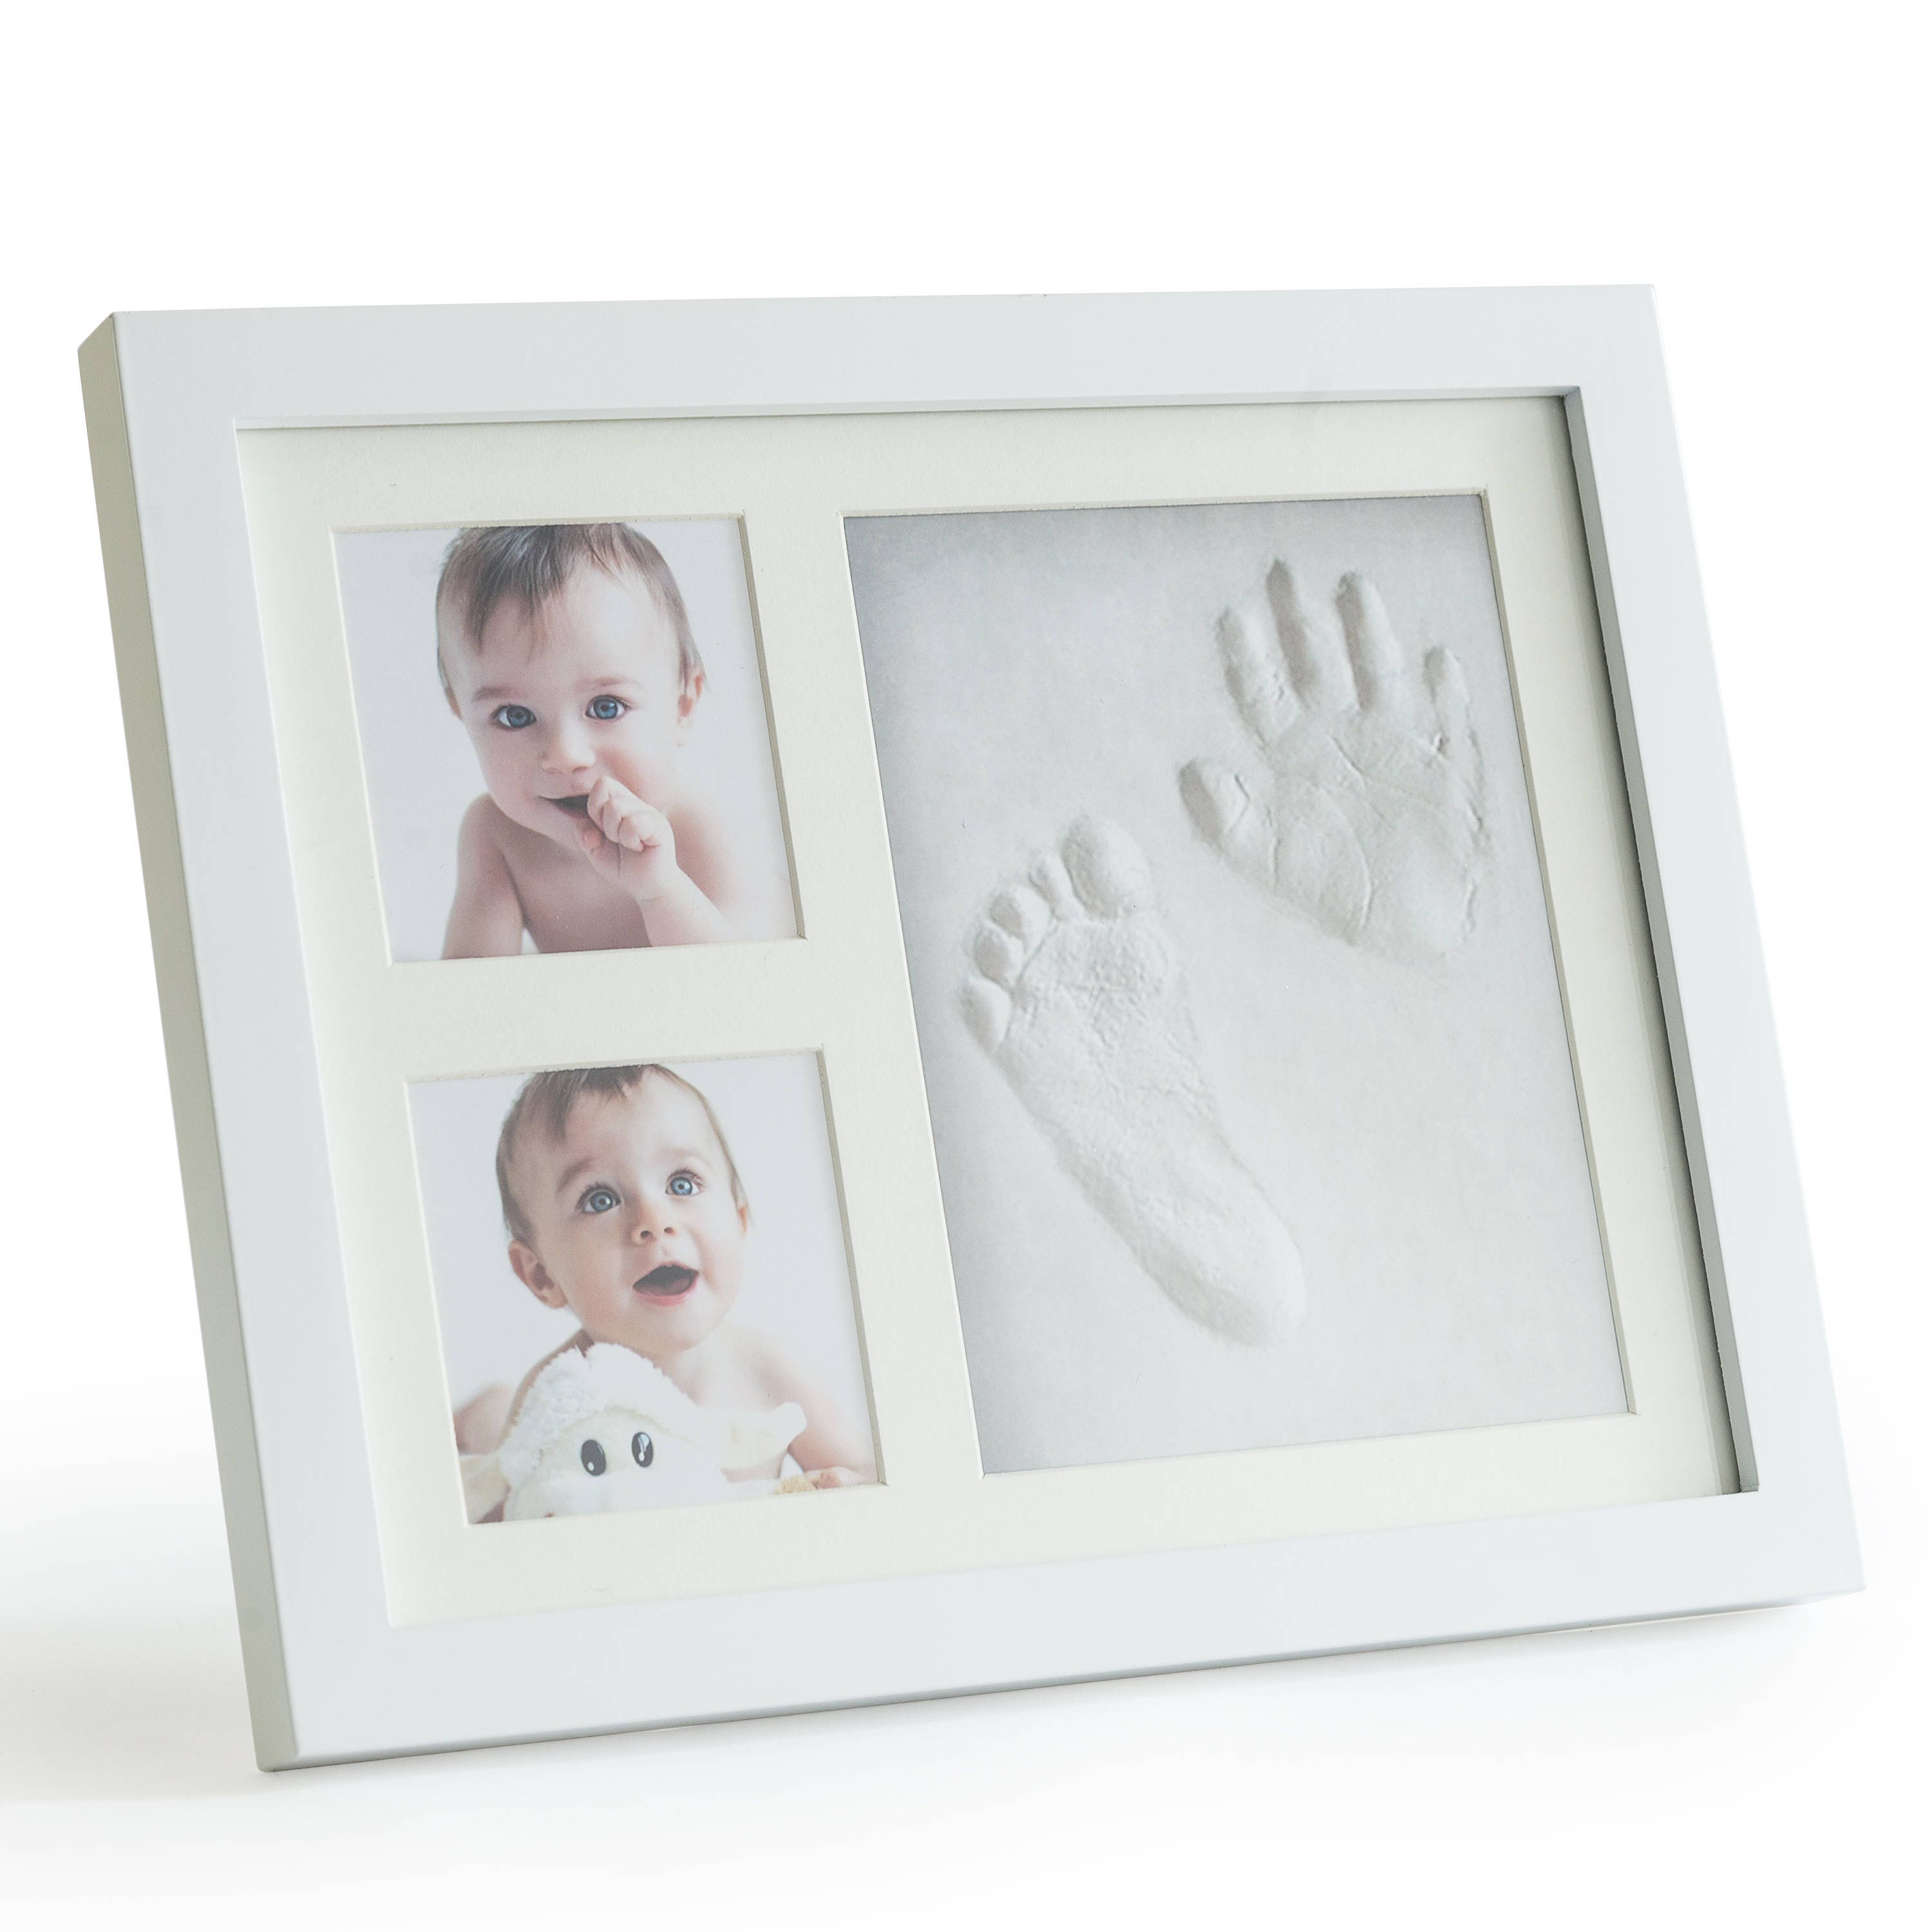 Blanco 1 Toygogo Baby Clay Handprint & Footprint Keepsake Photo Kit De Marco De Montaje En Pared Regalo De Bautizo 